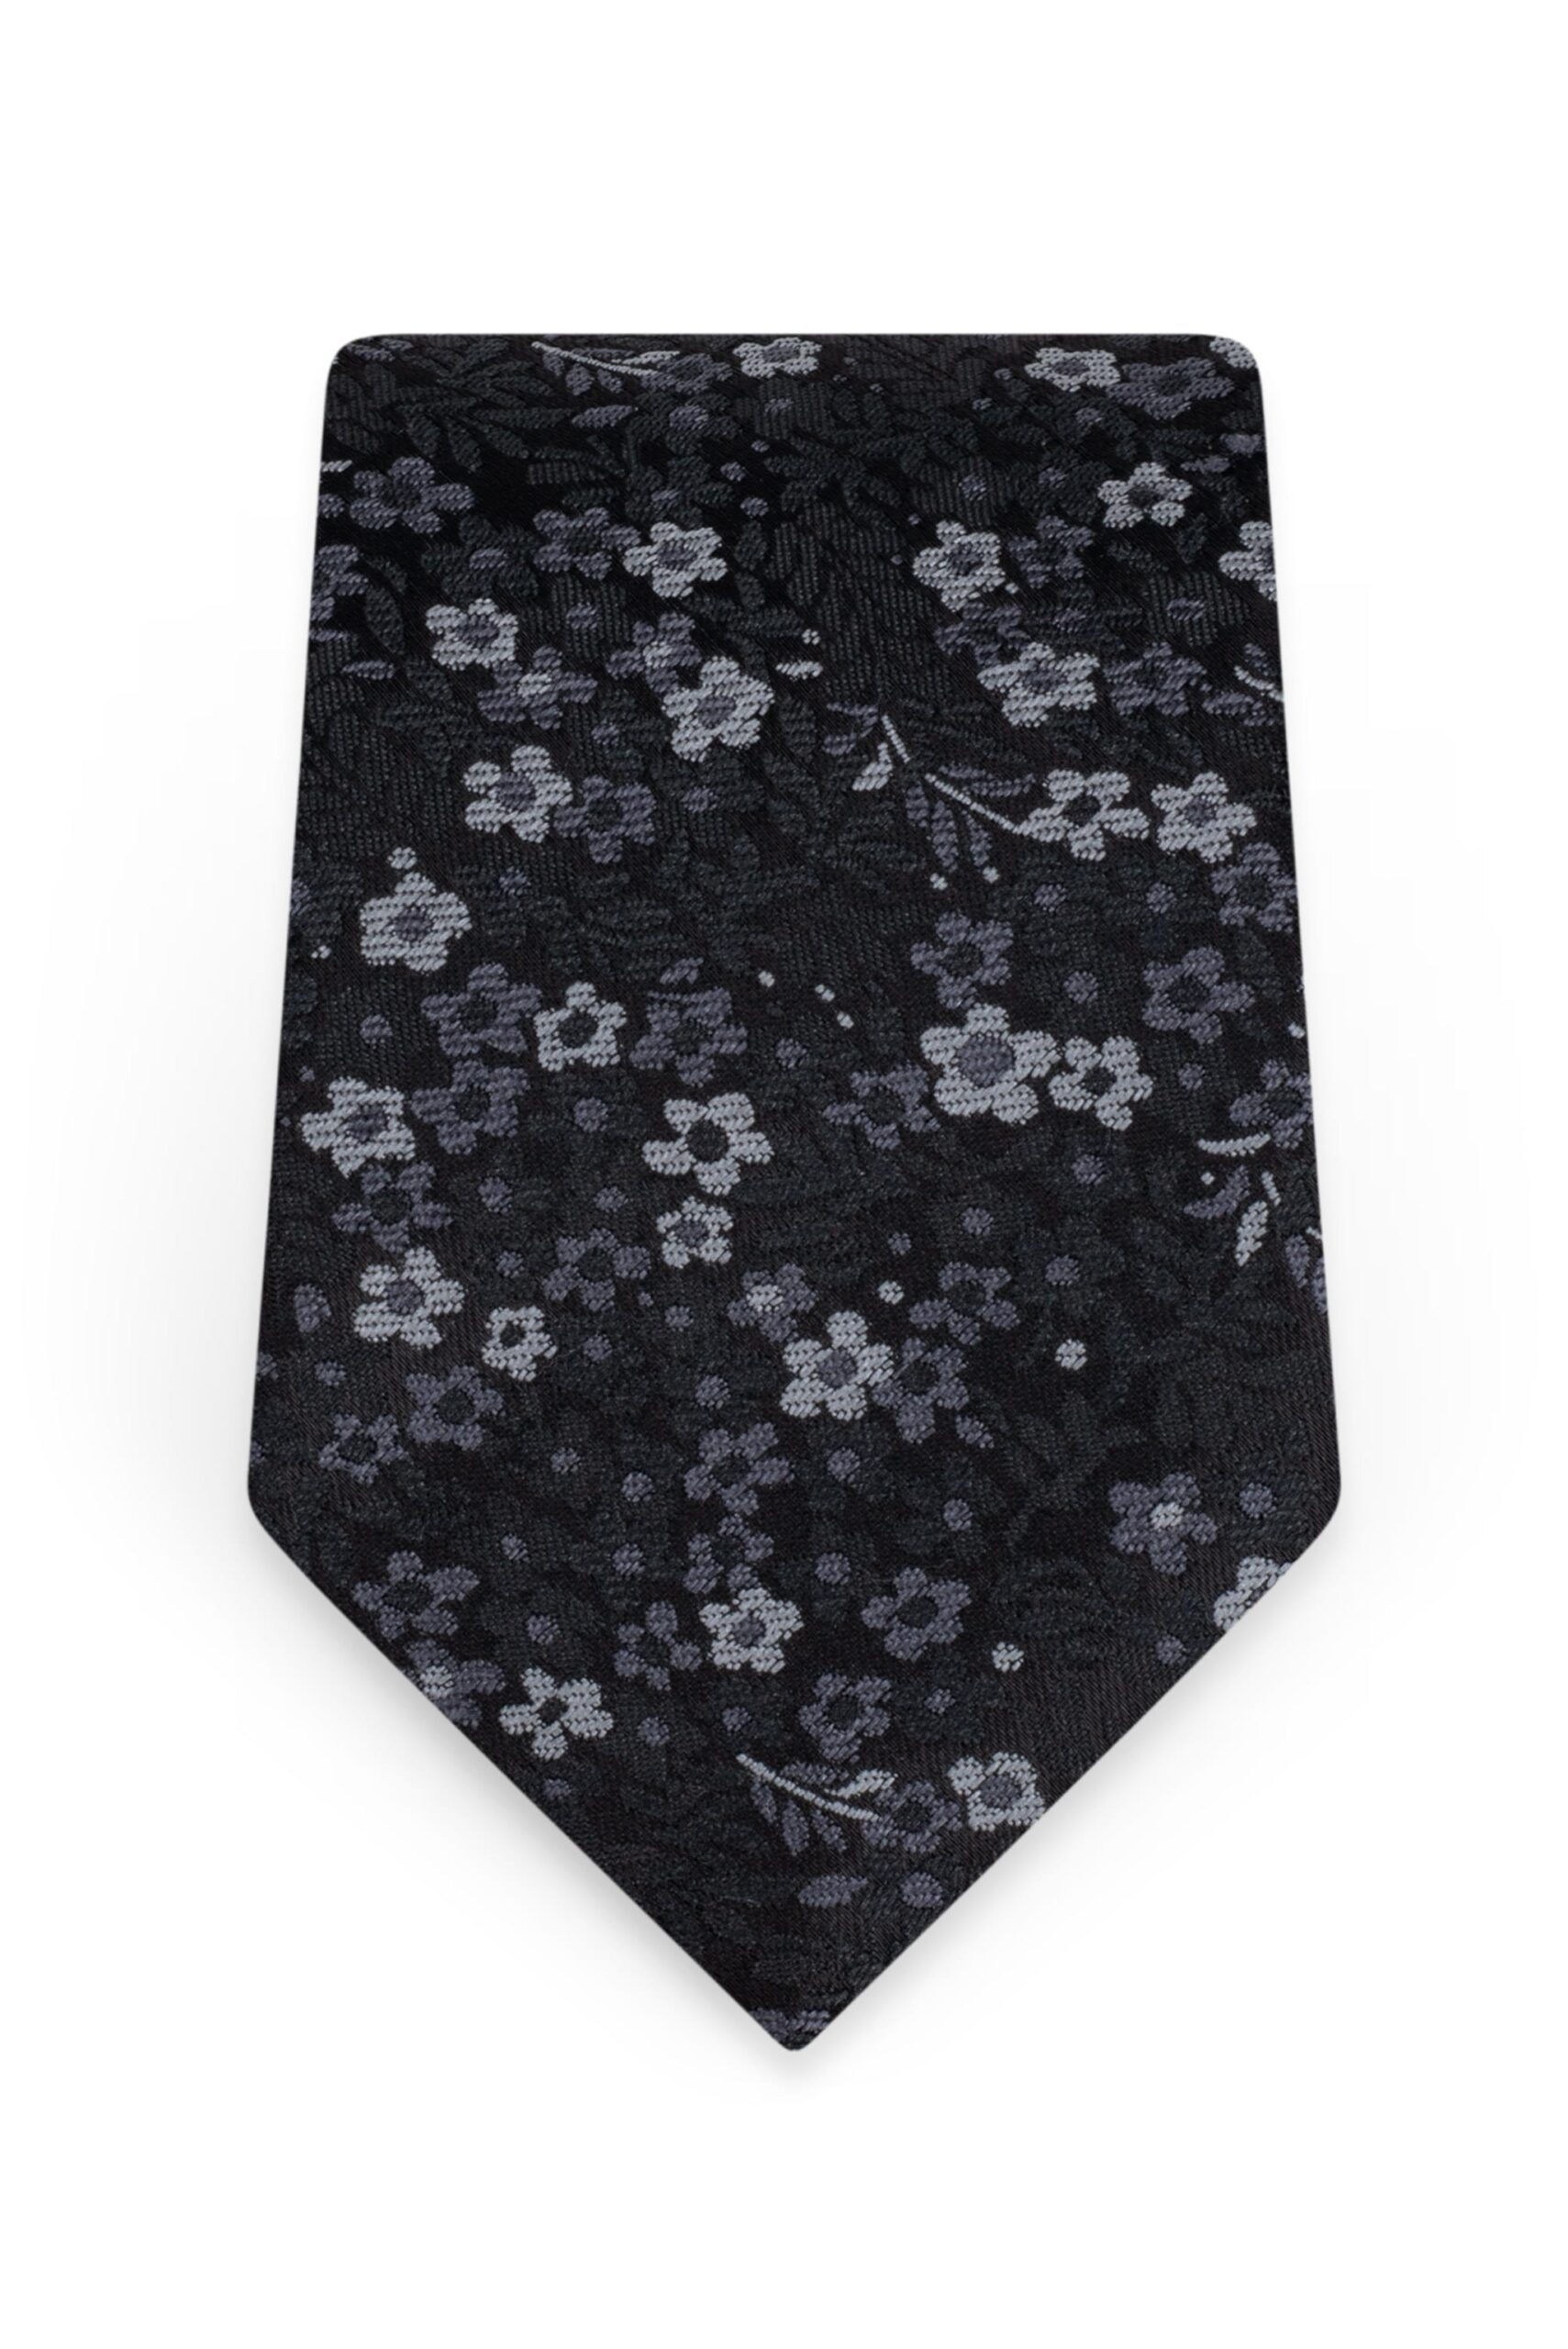 Floral Black Self-Tie Windsor Tie 1